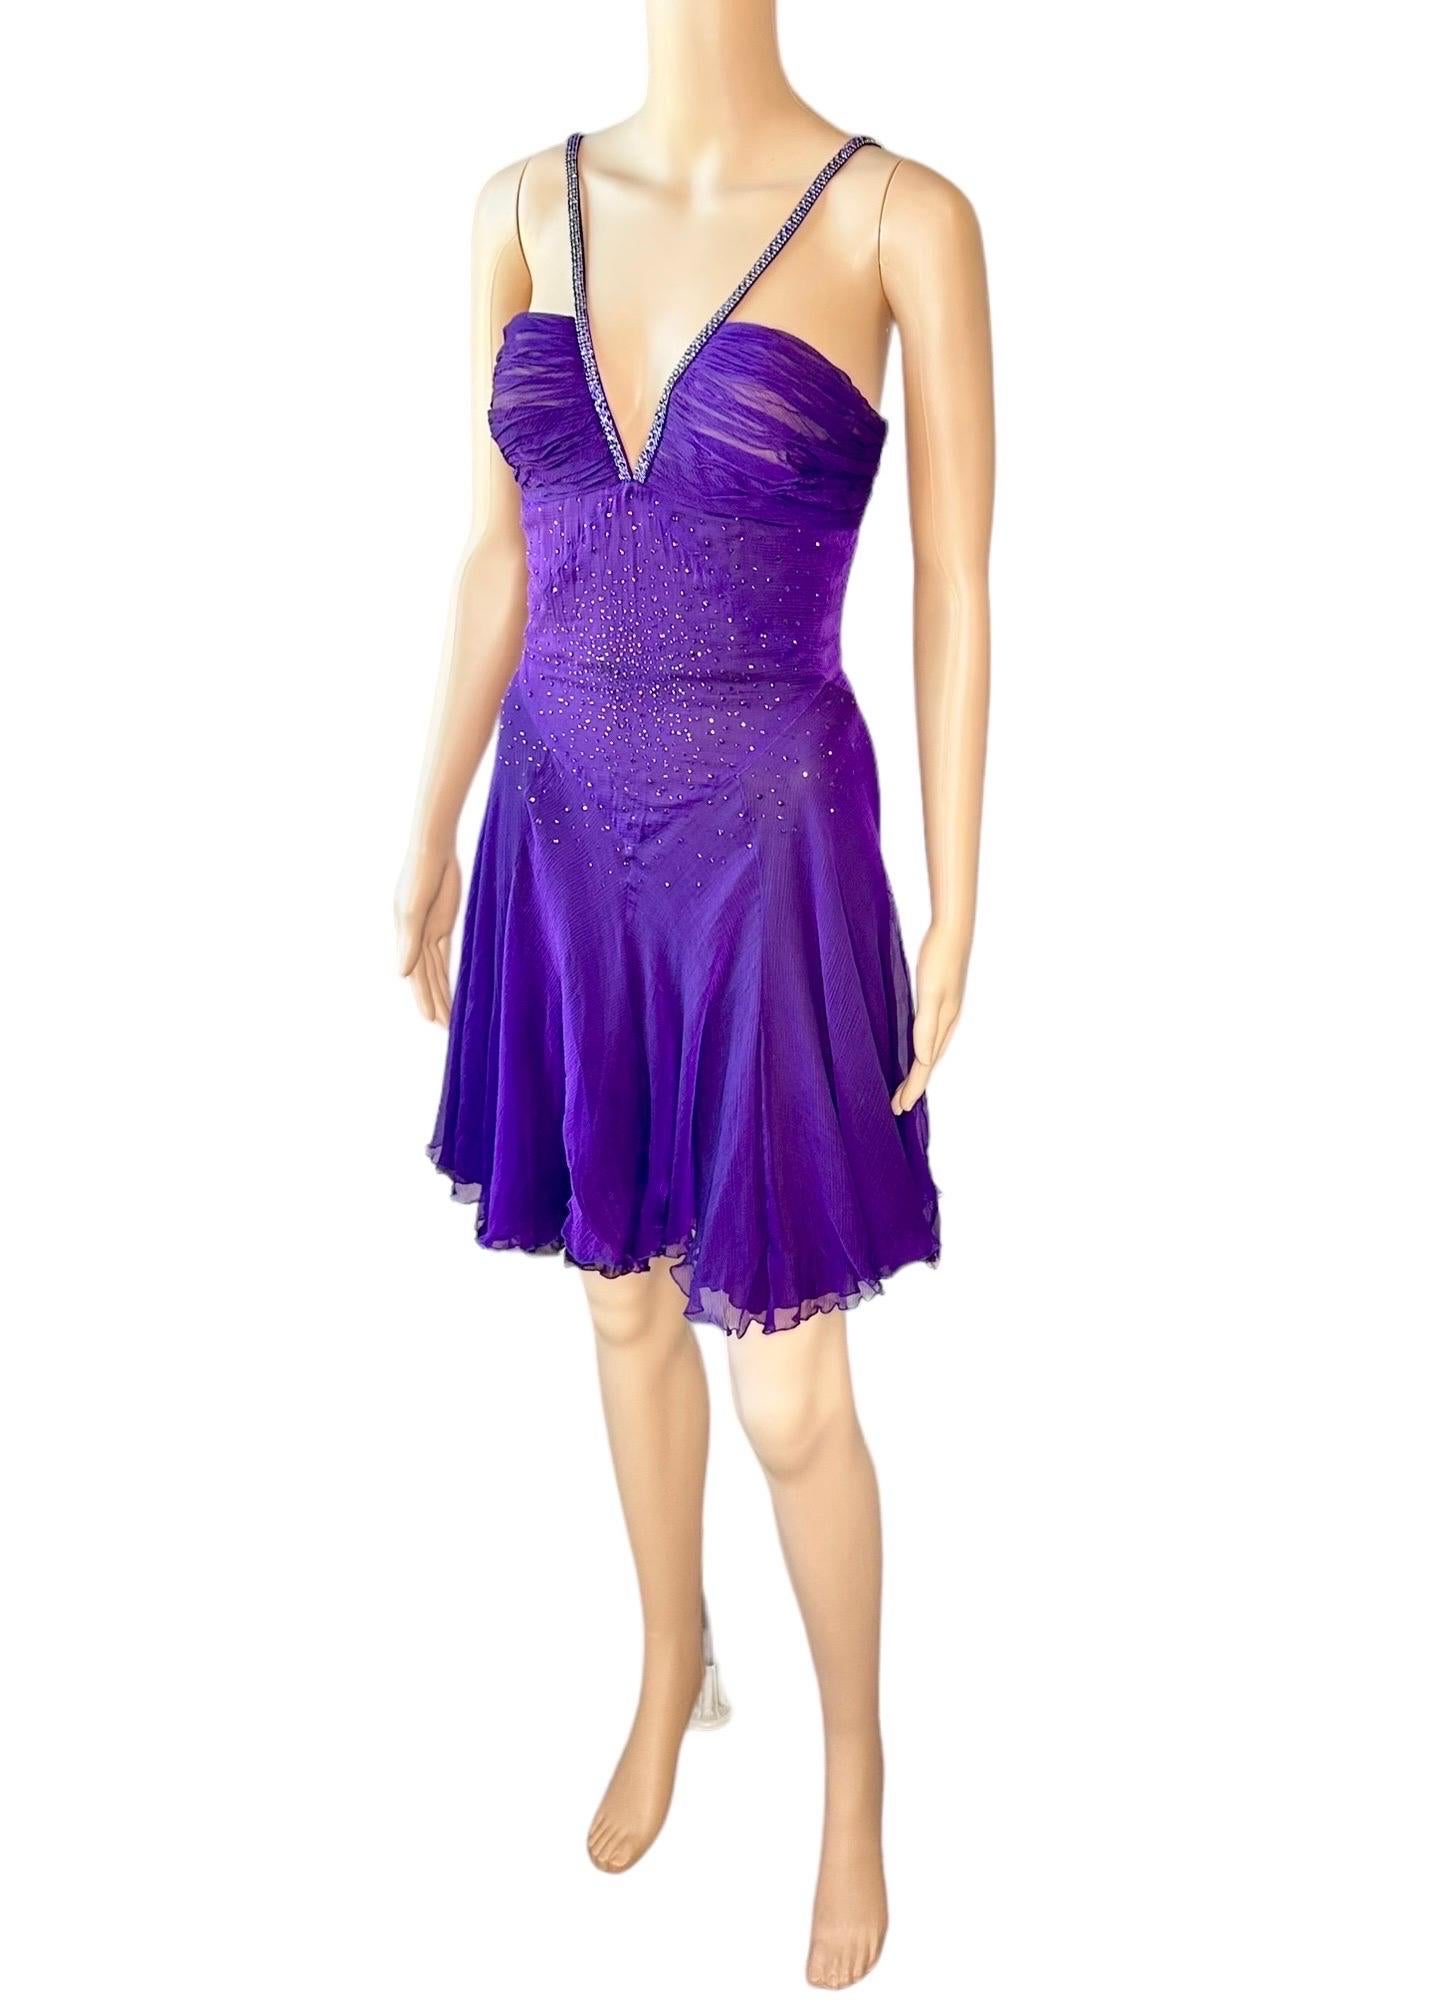 Versace c.2007 Crystal Embellished Plunging Neckline Semi-Sheer Purple Dress For Sale 4